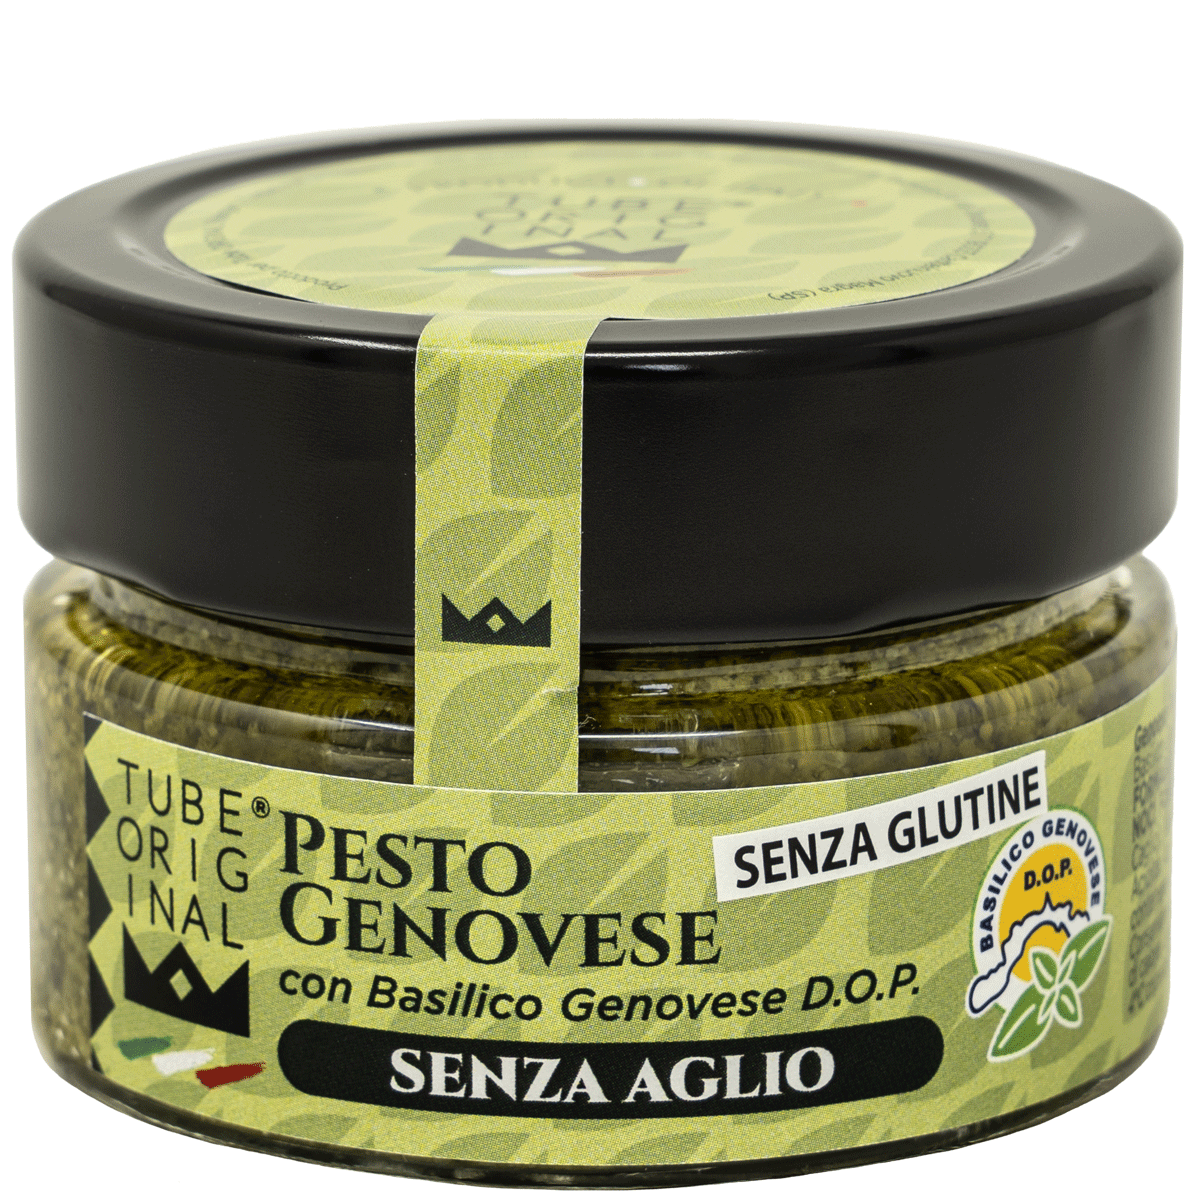 Pesto Genovese con Basilico Genovese D.O.P. senza Aglio